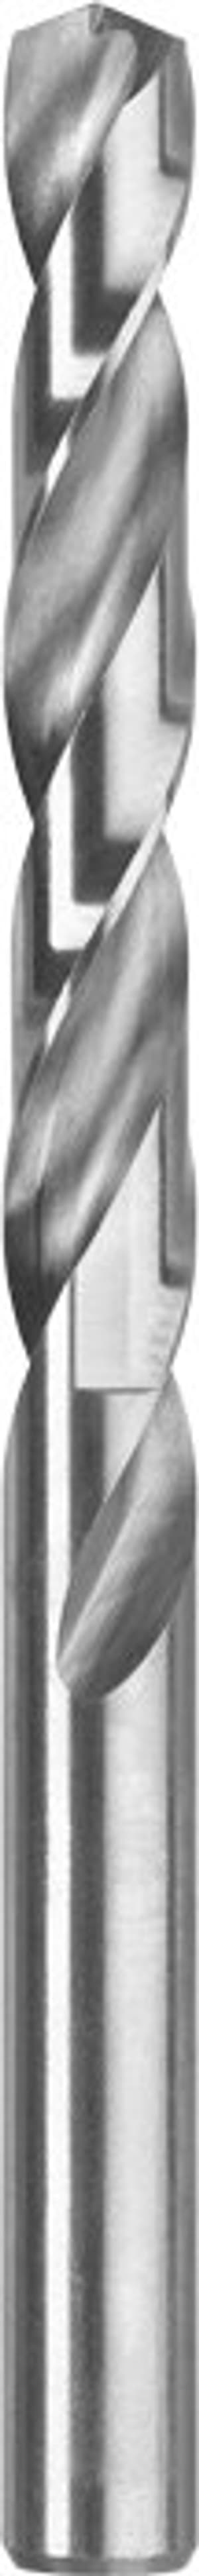 Silver Punta elicoidale HSS, ø 4.8 mm